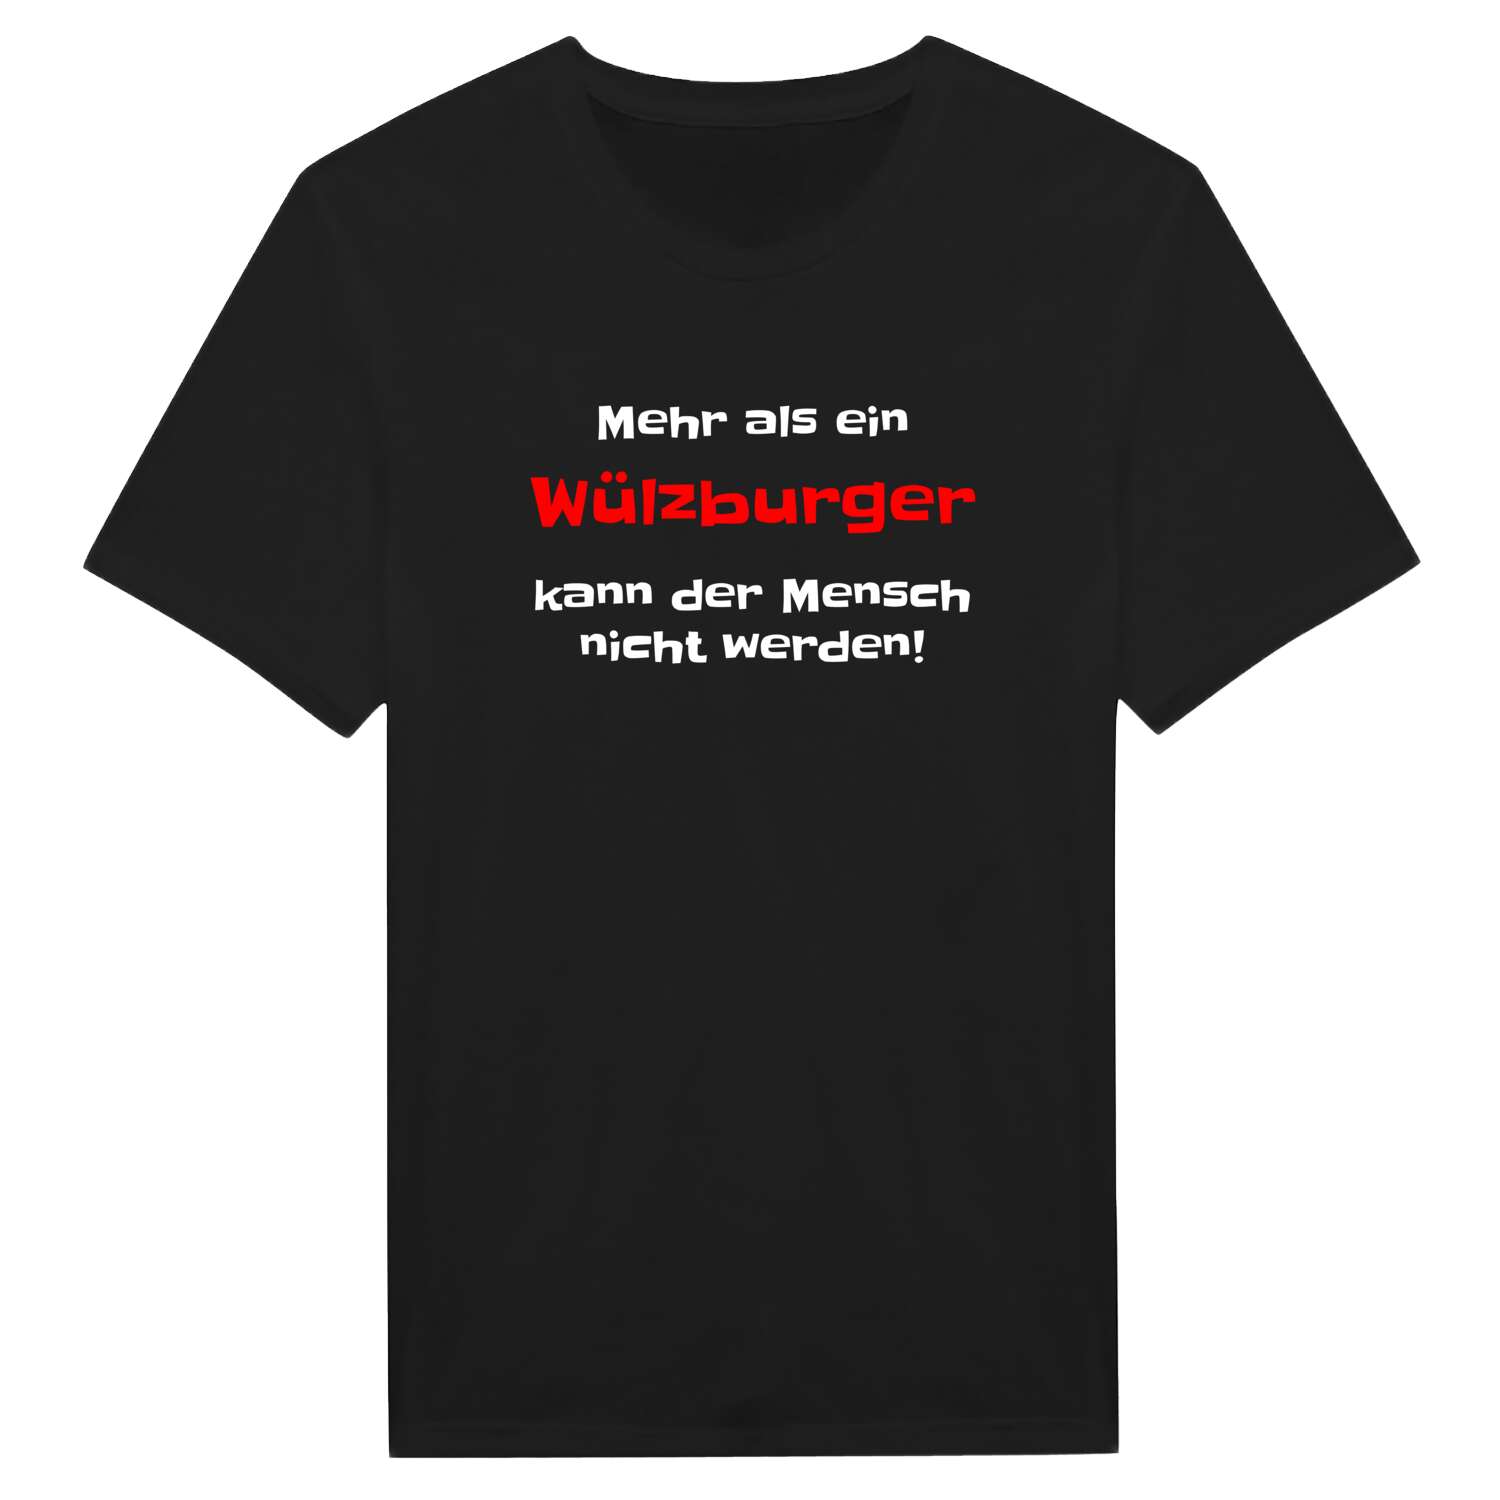 Wülzburg T-Shirt »Mehr als ein«